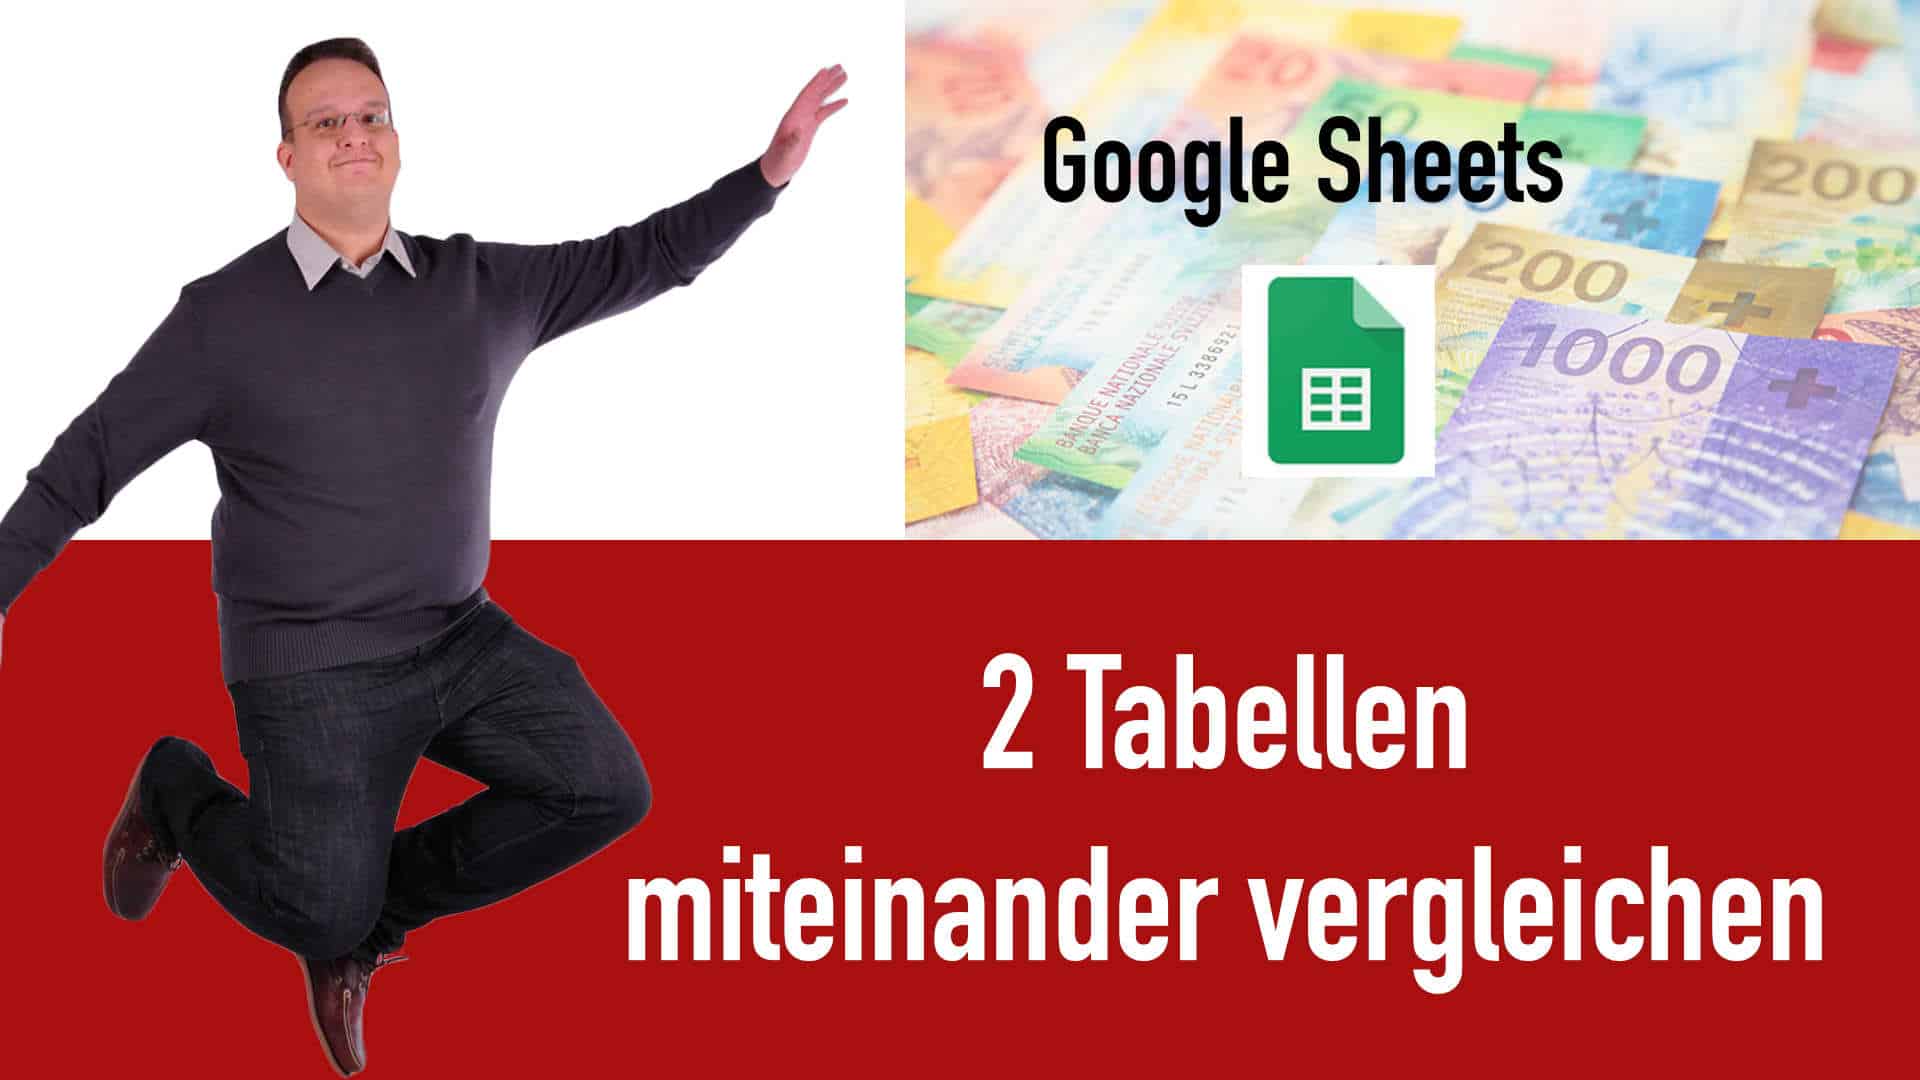 Google Sheets – Wie vergleicht man 2 Tabellen miteinander?